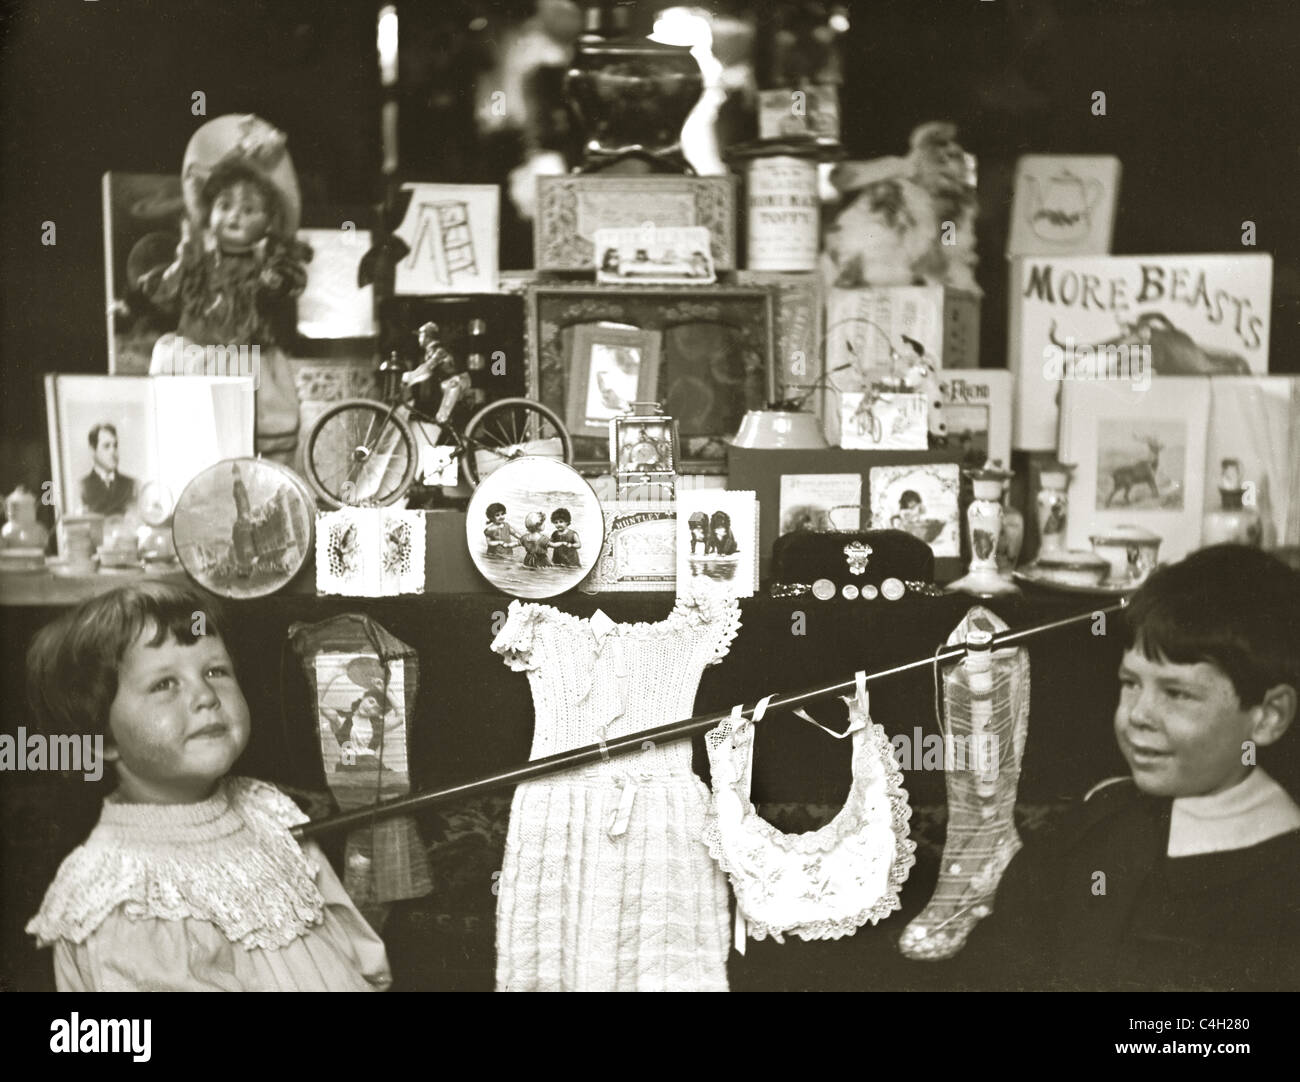 Fotografía original de niños eduardianos o victorianos mirando en el escaparate de la tienda / frente de una tienda de juguetes, retro alrededor de 1890 1890's. Foto de stock